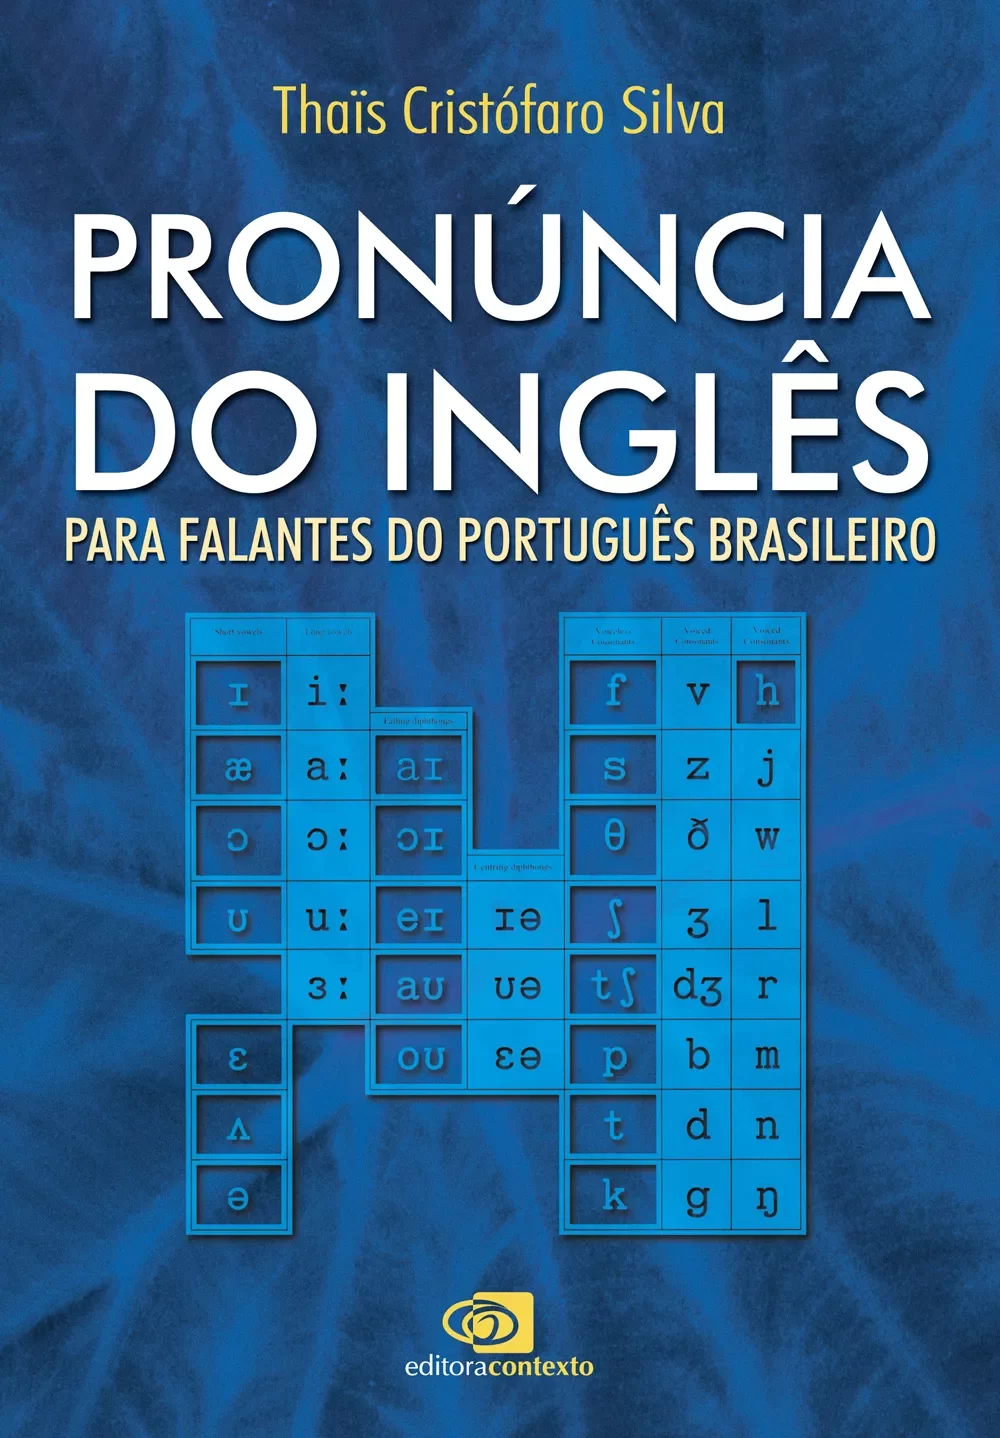 Dicionário Moderno de Inglês-Português Porto Editora / Porto